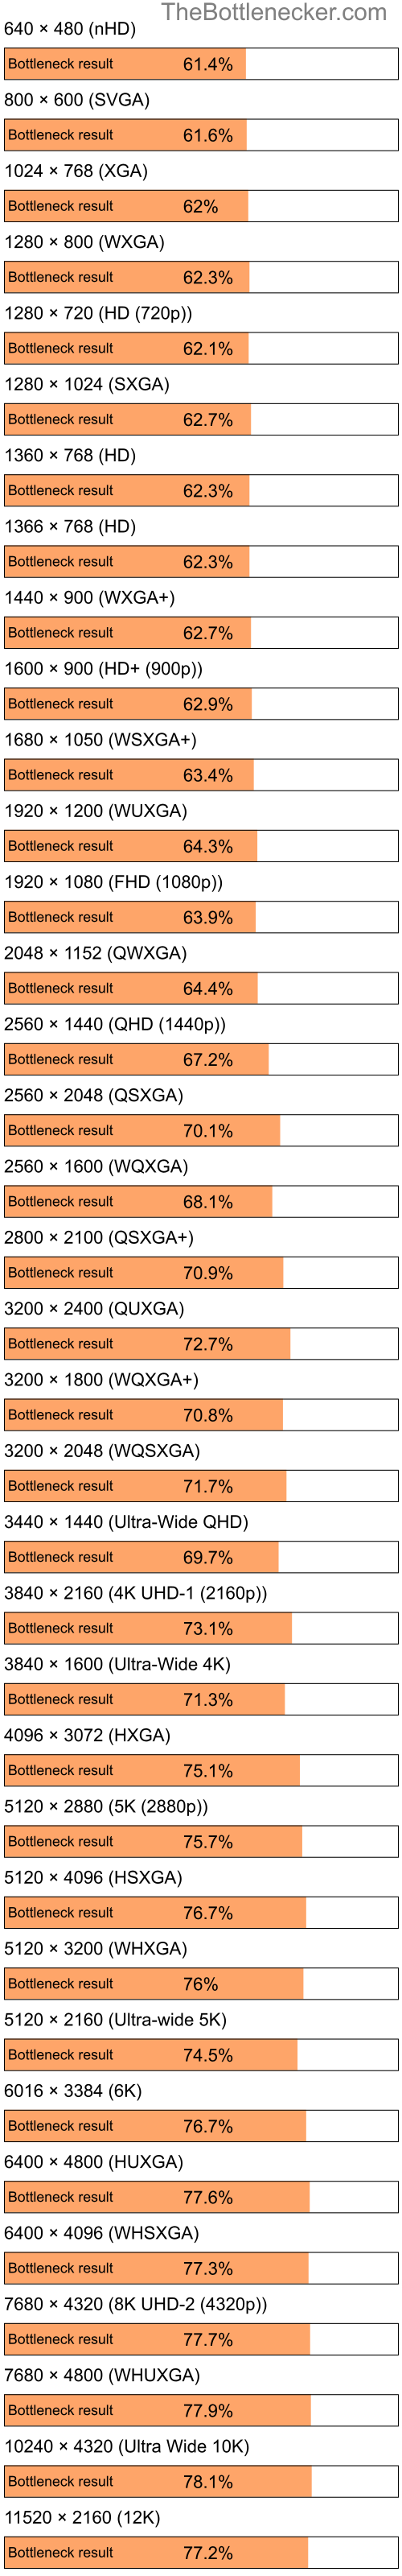 Bottleneck results by resolution for Intel Celeron and NVIDIA GeForce 8600M GT in General Tasks